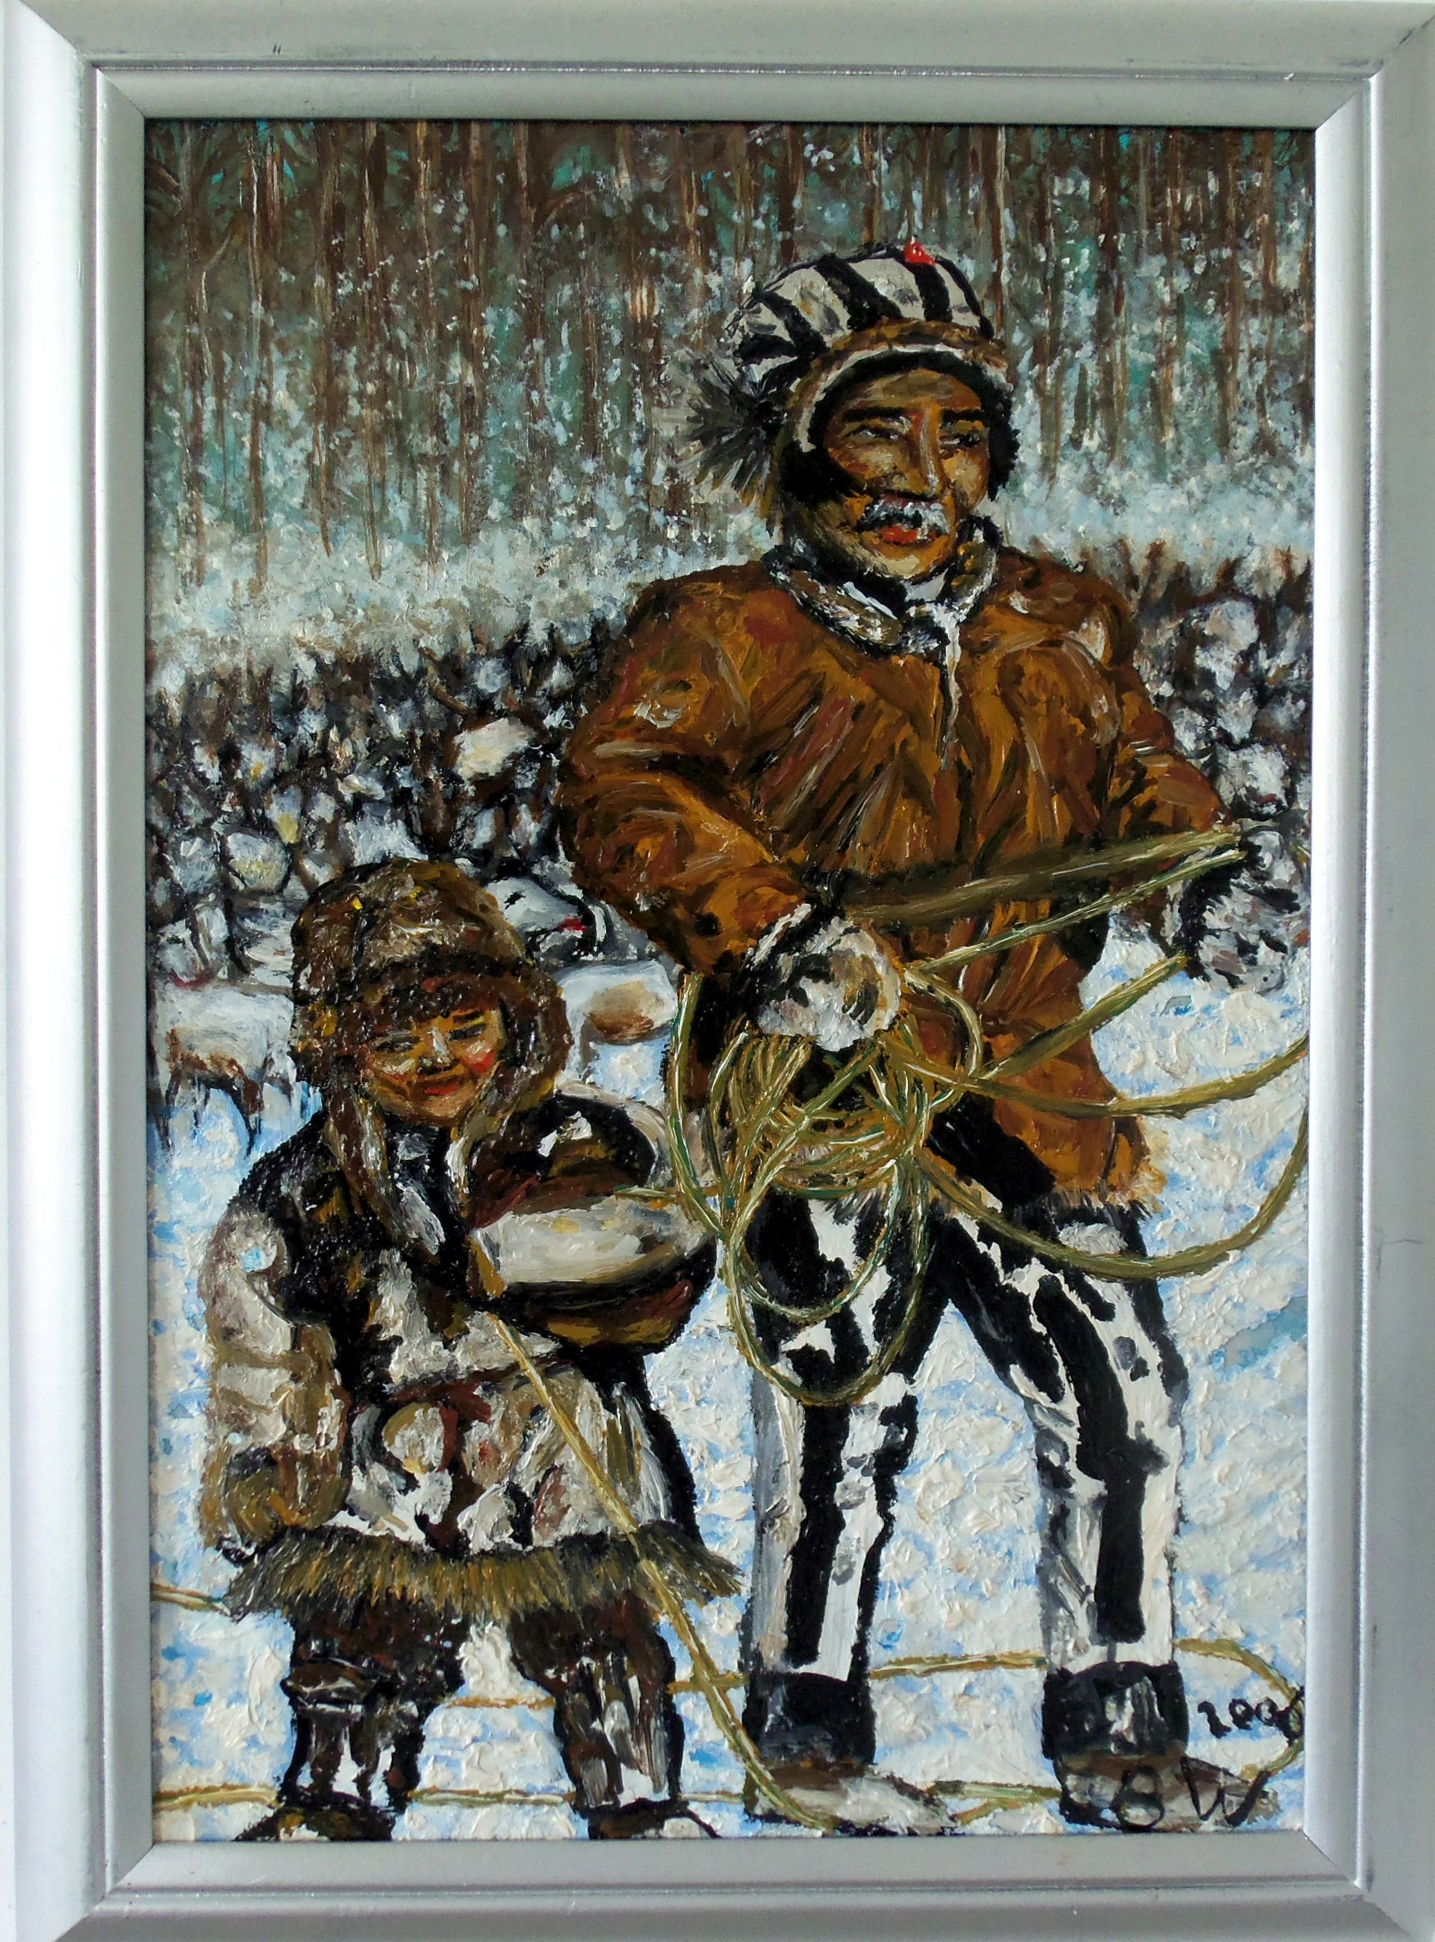 olieverf schilderij van een eskimo vader met kind geschilderd door Brigit Weeda.